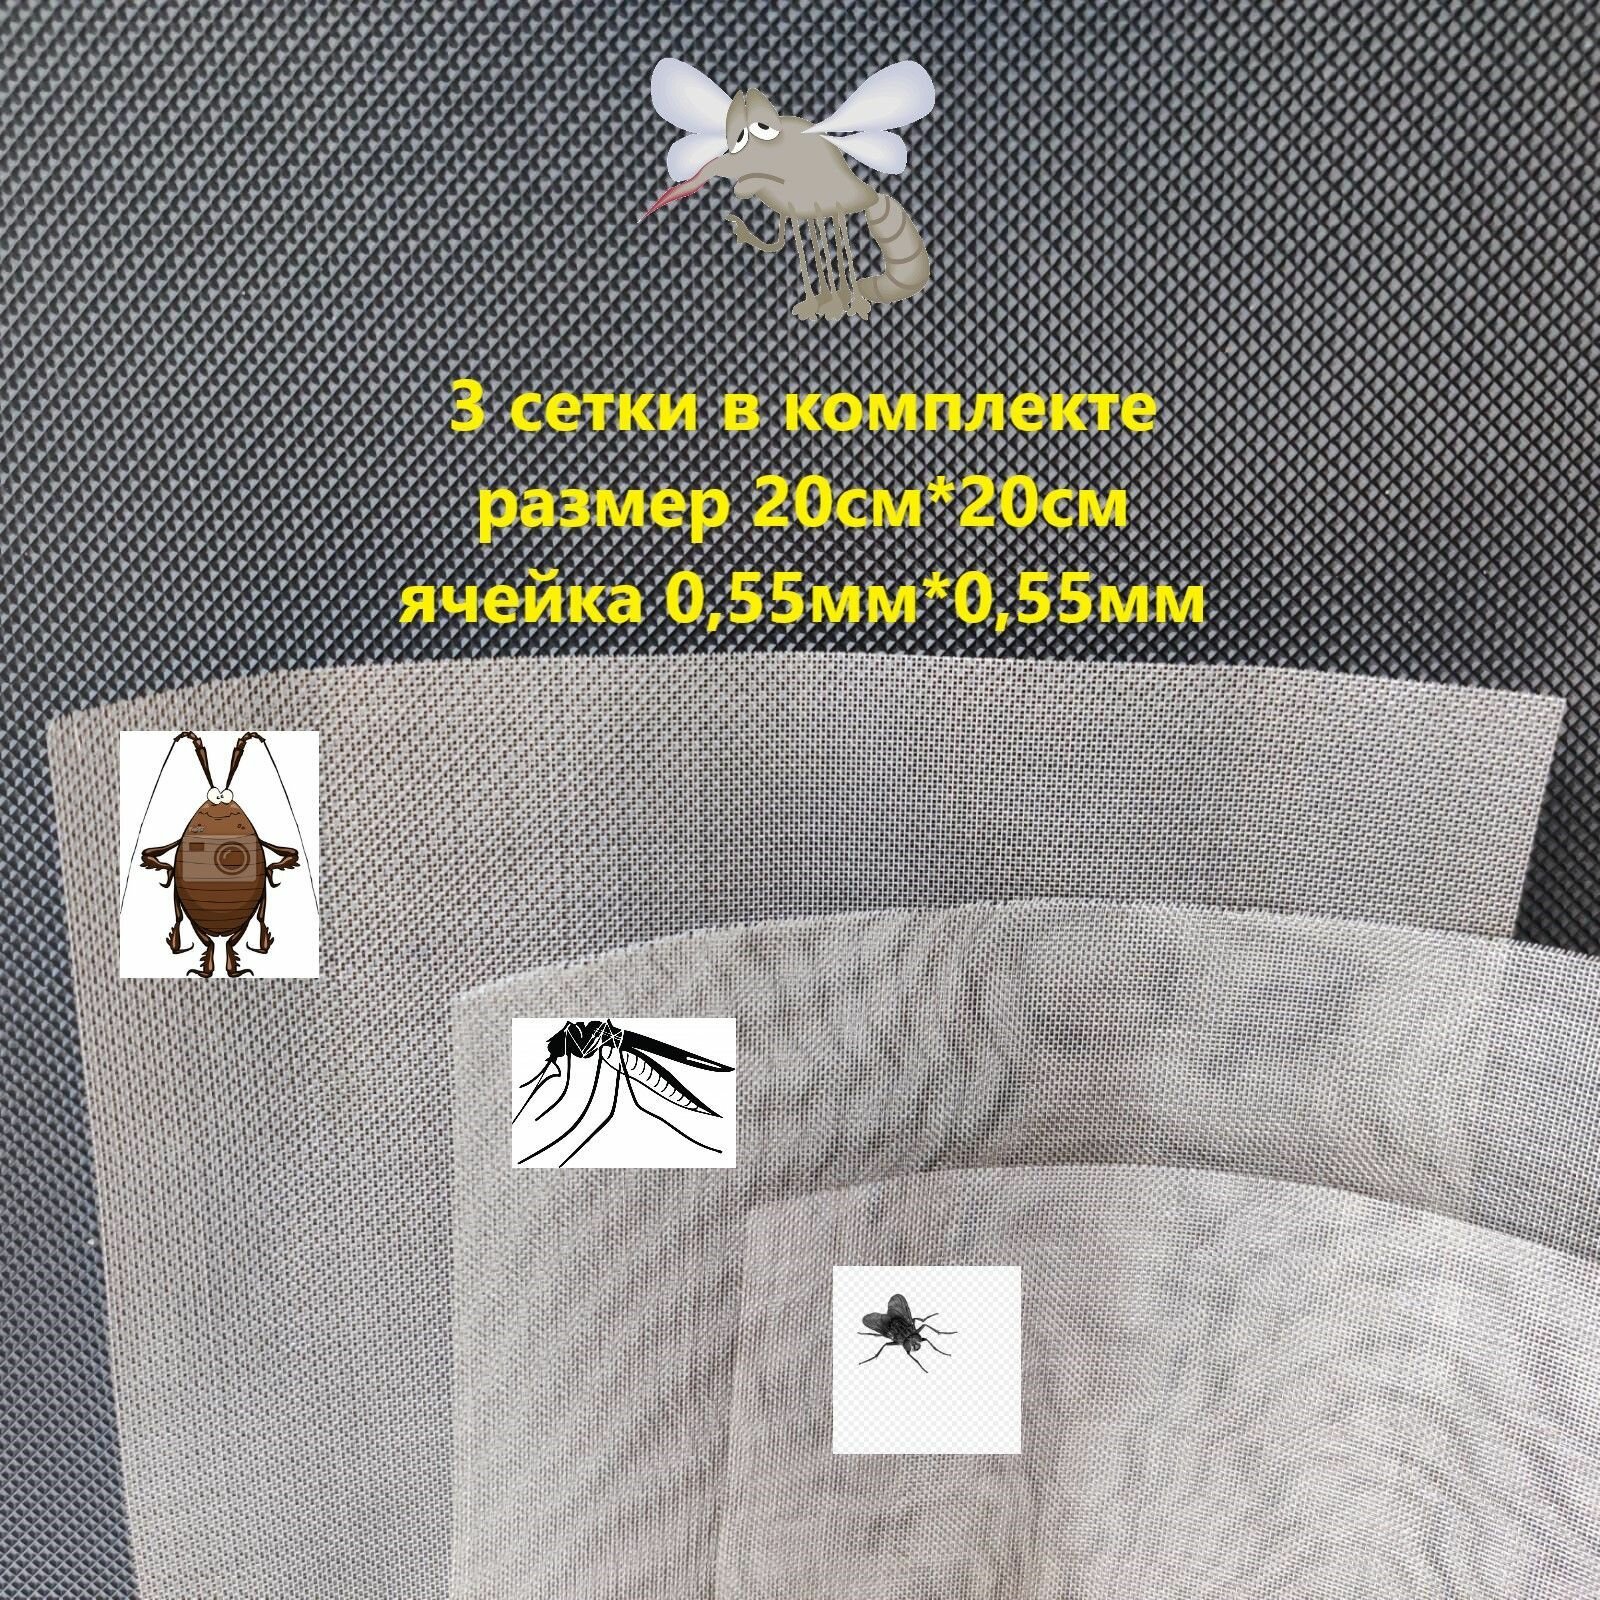 Сетка для вентиляционных систем от насекомых, клопов, тараканов, комаров, размер 20см*20см, ячейка 0.55мм*0.55мм. - фотография № 1